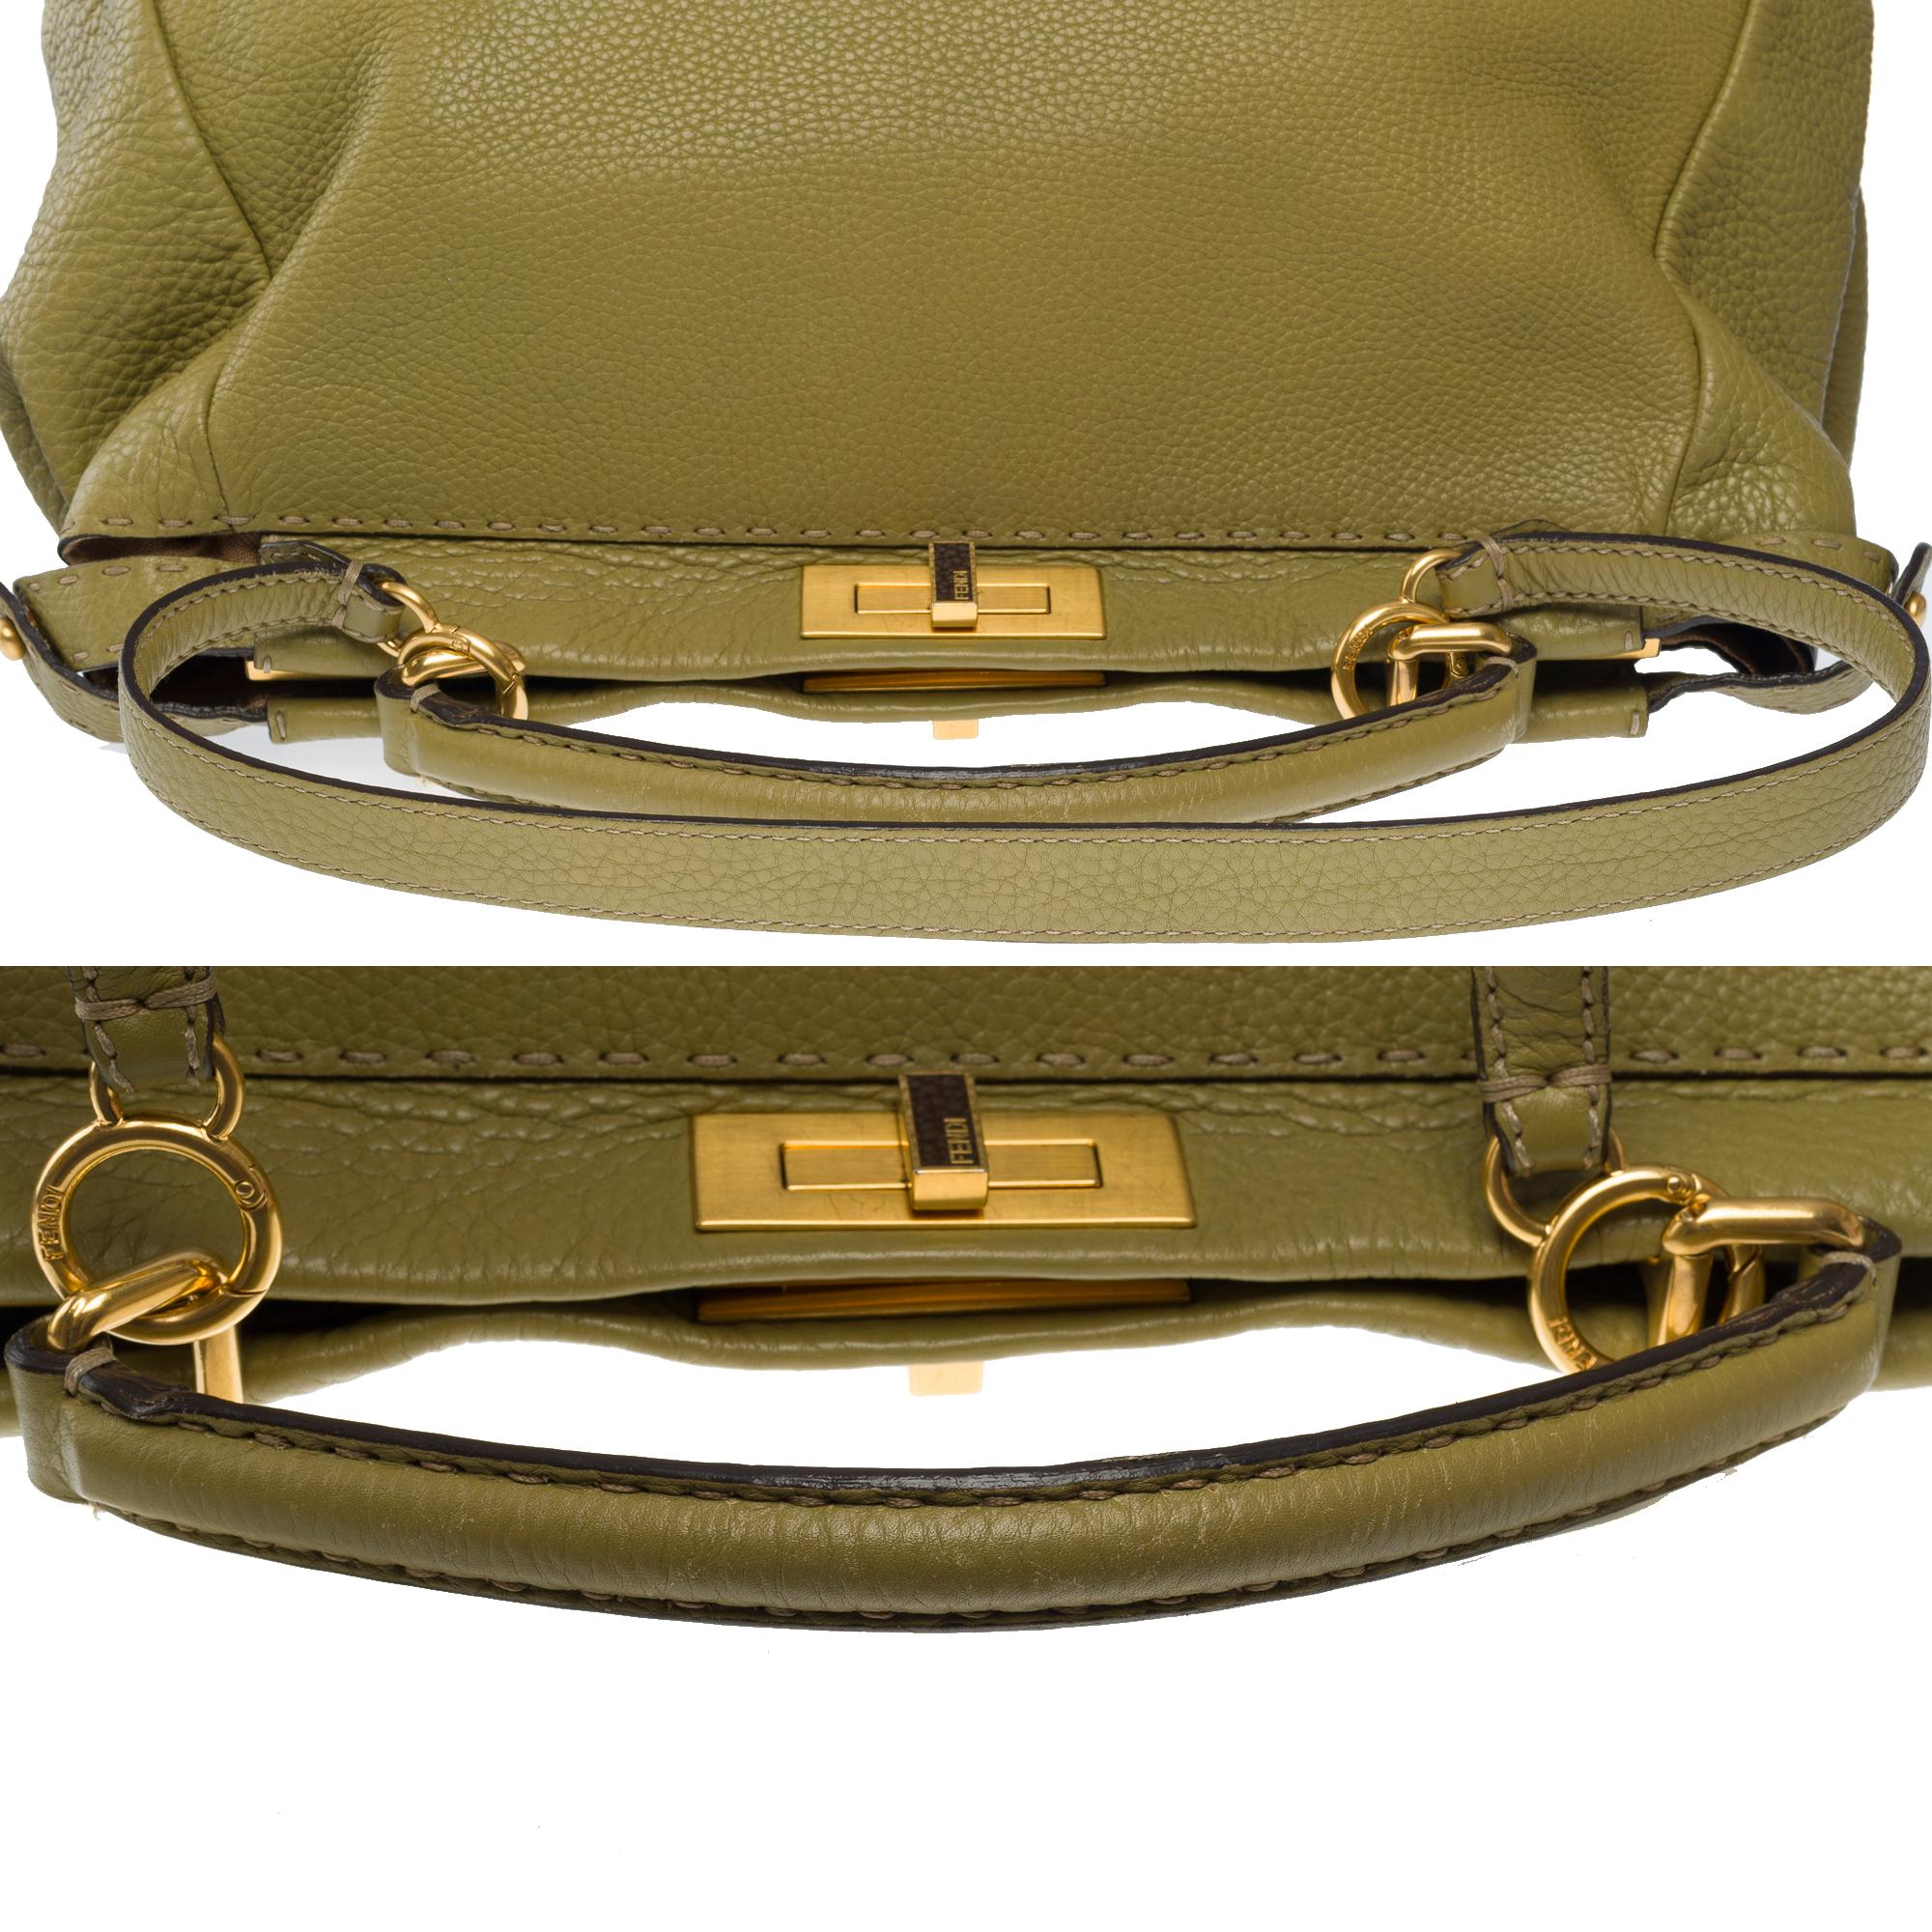 Fendi Grand Modele Peekaboo handbag strap in Olive Green calf leather, GHW For Sale 6